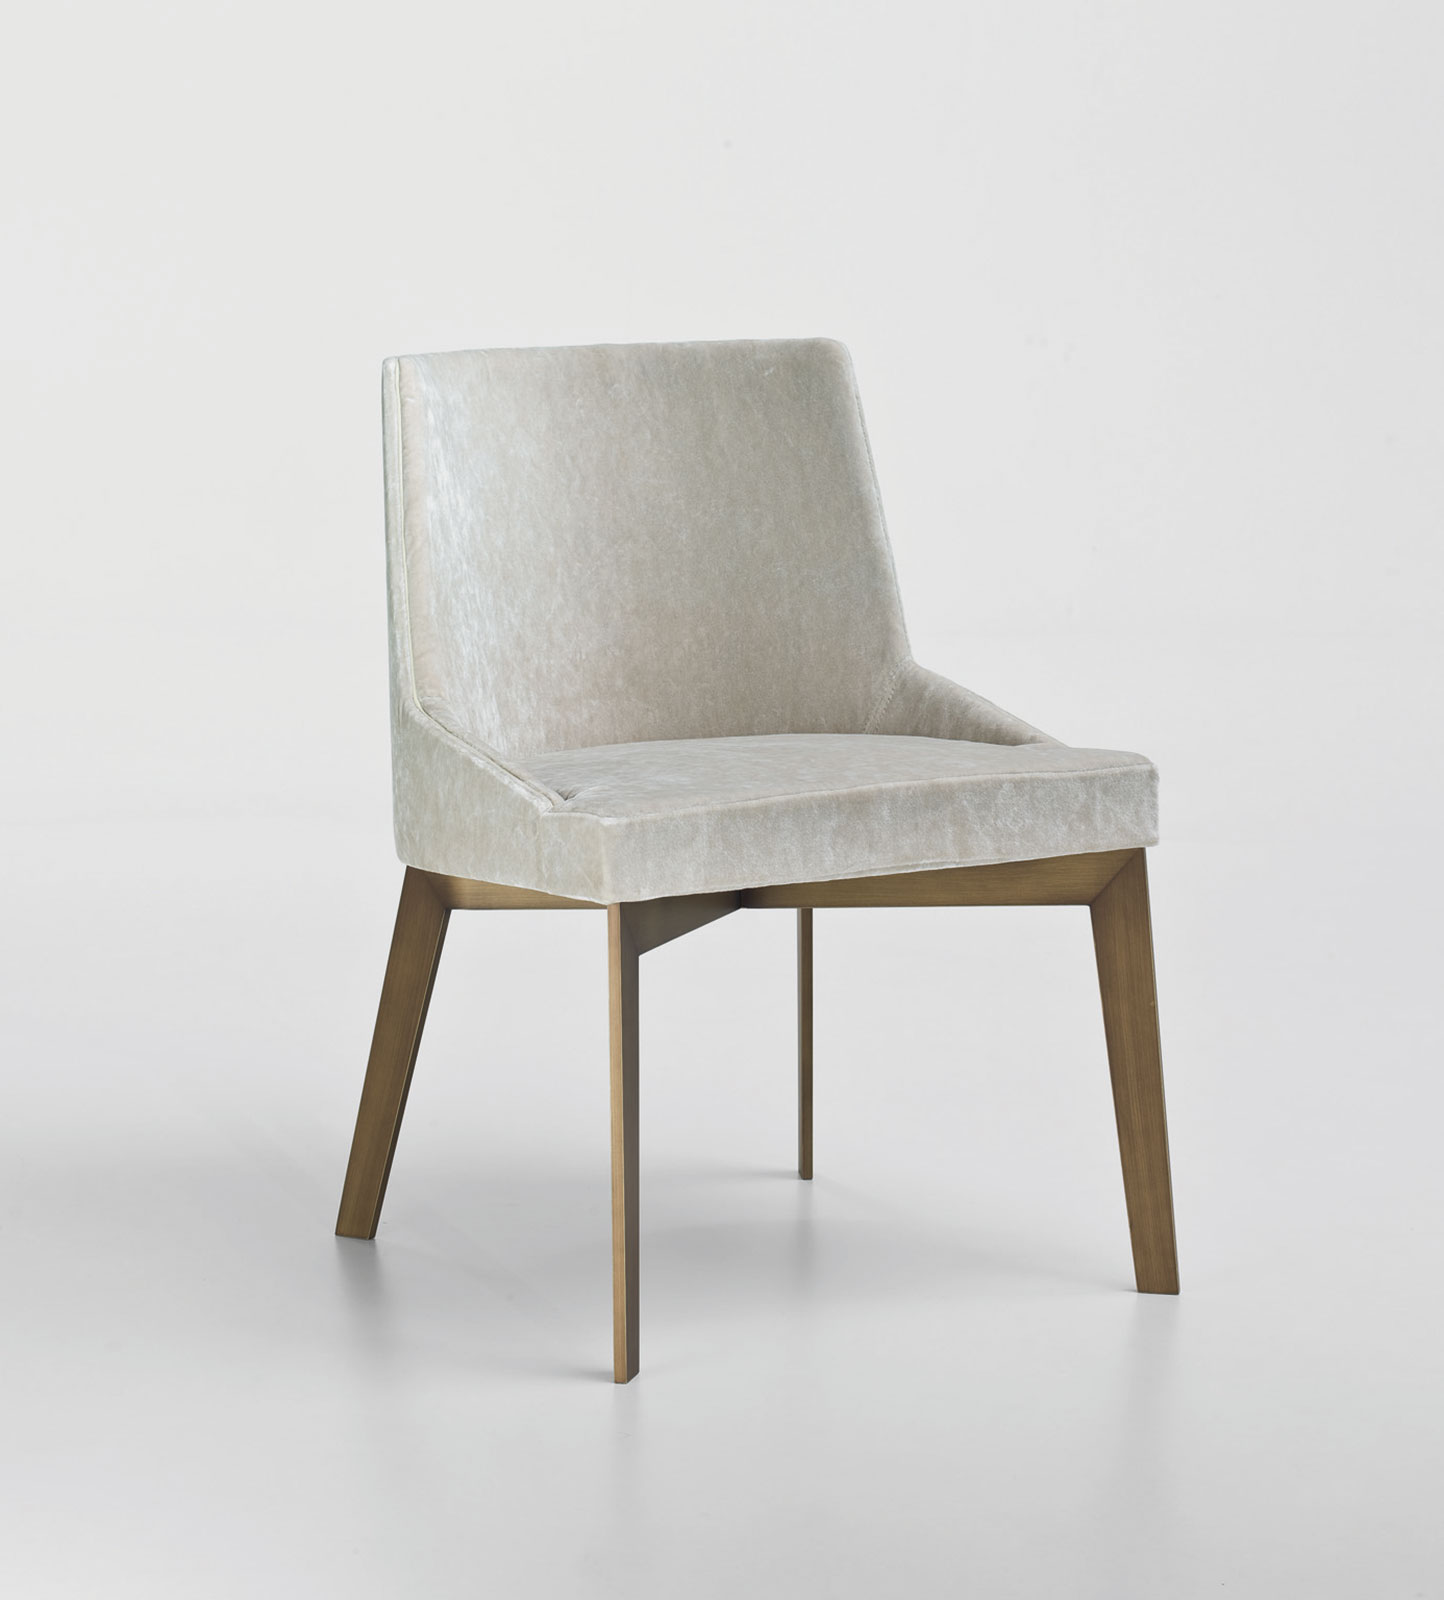 Luxueuse chaise rembourrée réalisée artisanalement en Italie. Vente en ligne de meubles hauts de gamme avec livraion gratuite. Nombreux modèles de chaises.